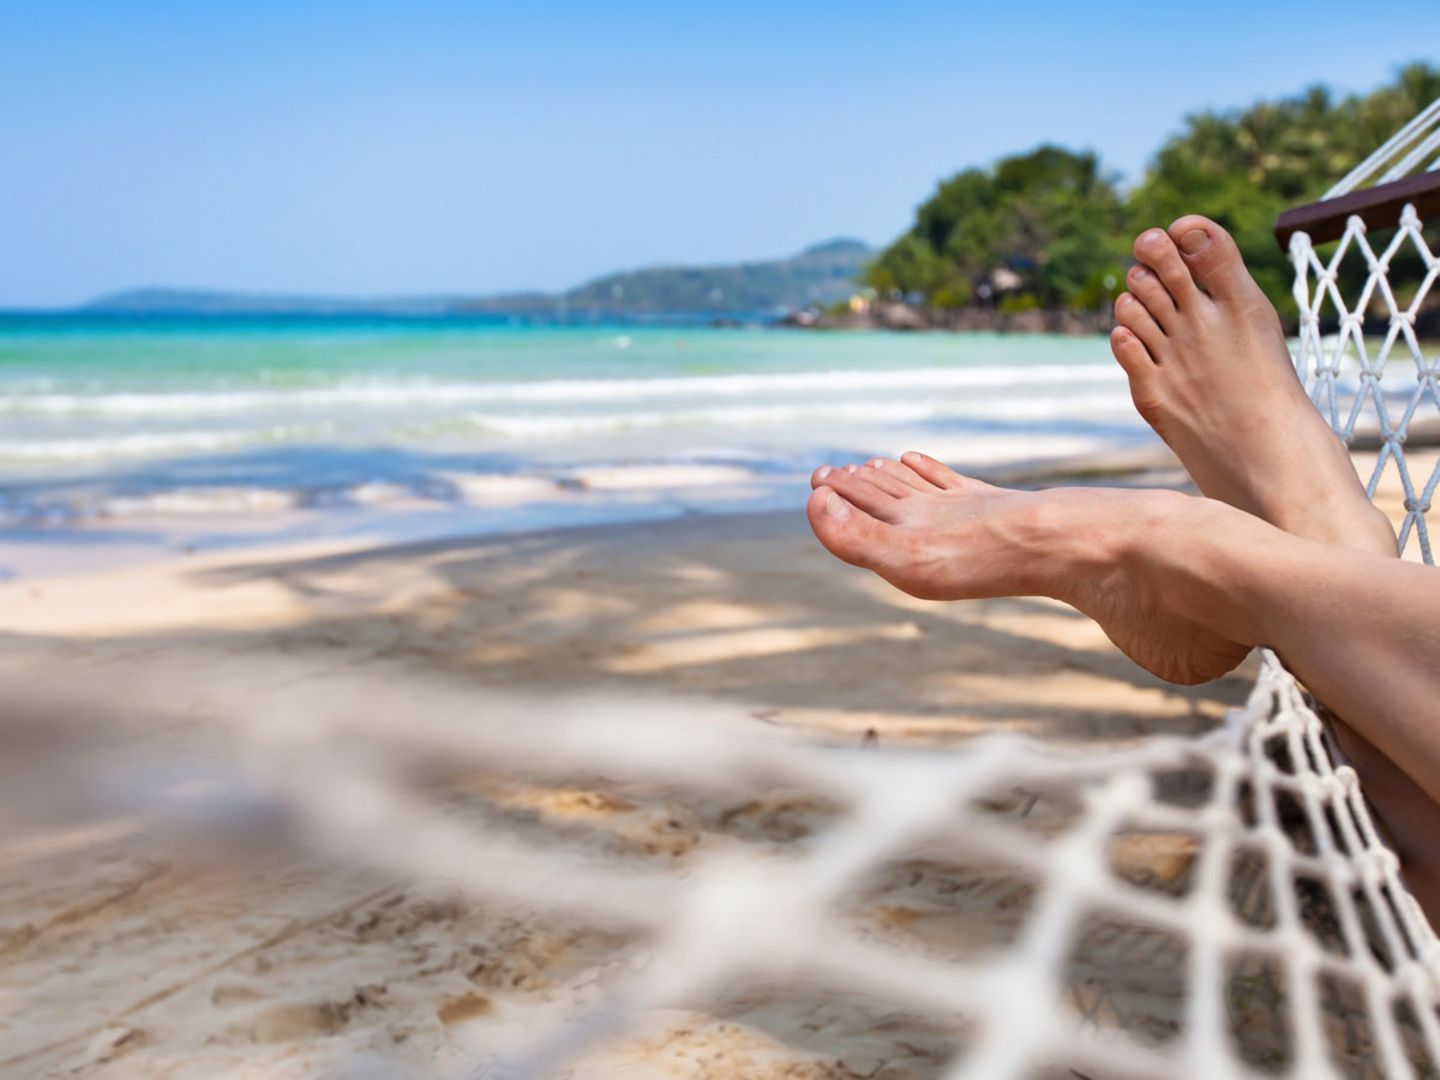 Immer im Urlaub krank?: Diese 5 Tipps helfen gegen Leisure Sickness